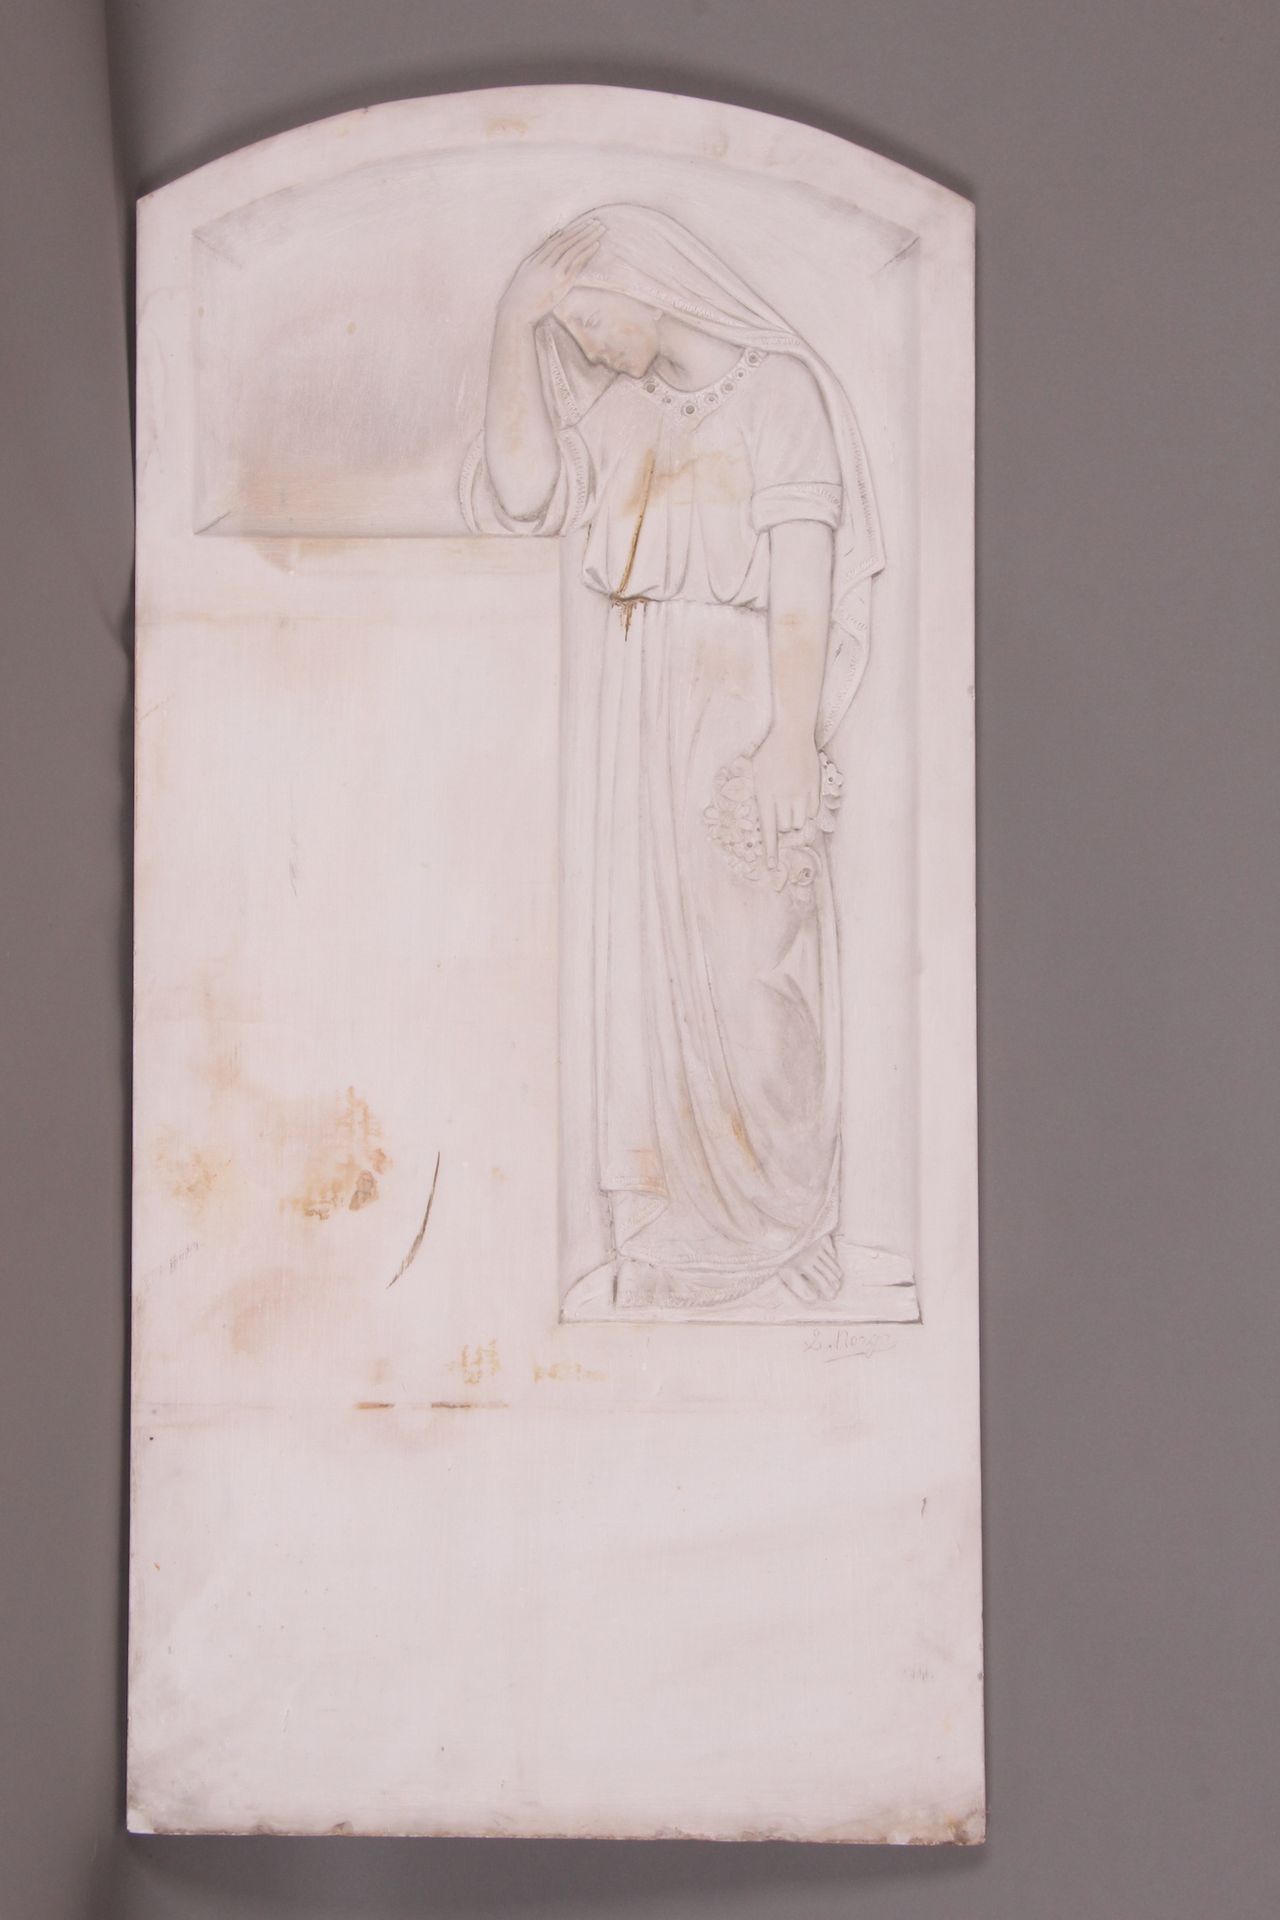 [SCULPTURE]. Sylvain NORGA. "石碑，约 1900 年"，白玉石，104 x 50。已签名。边缘有污渍和小缺口。